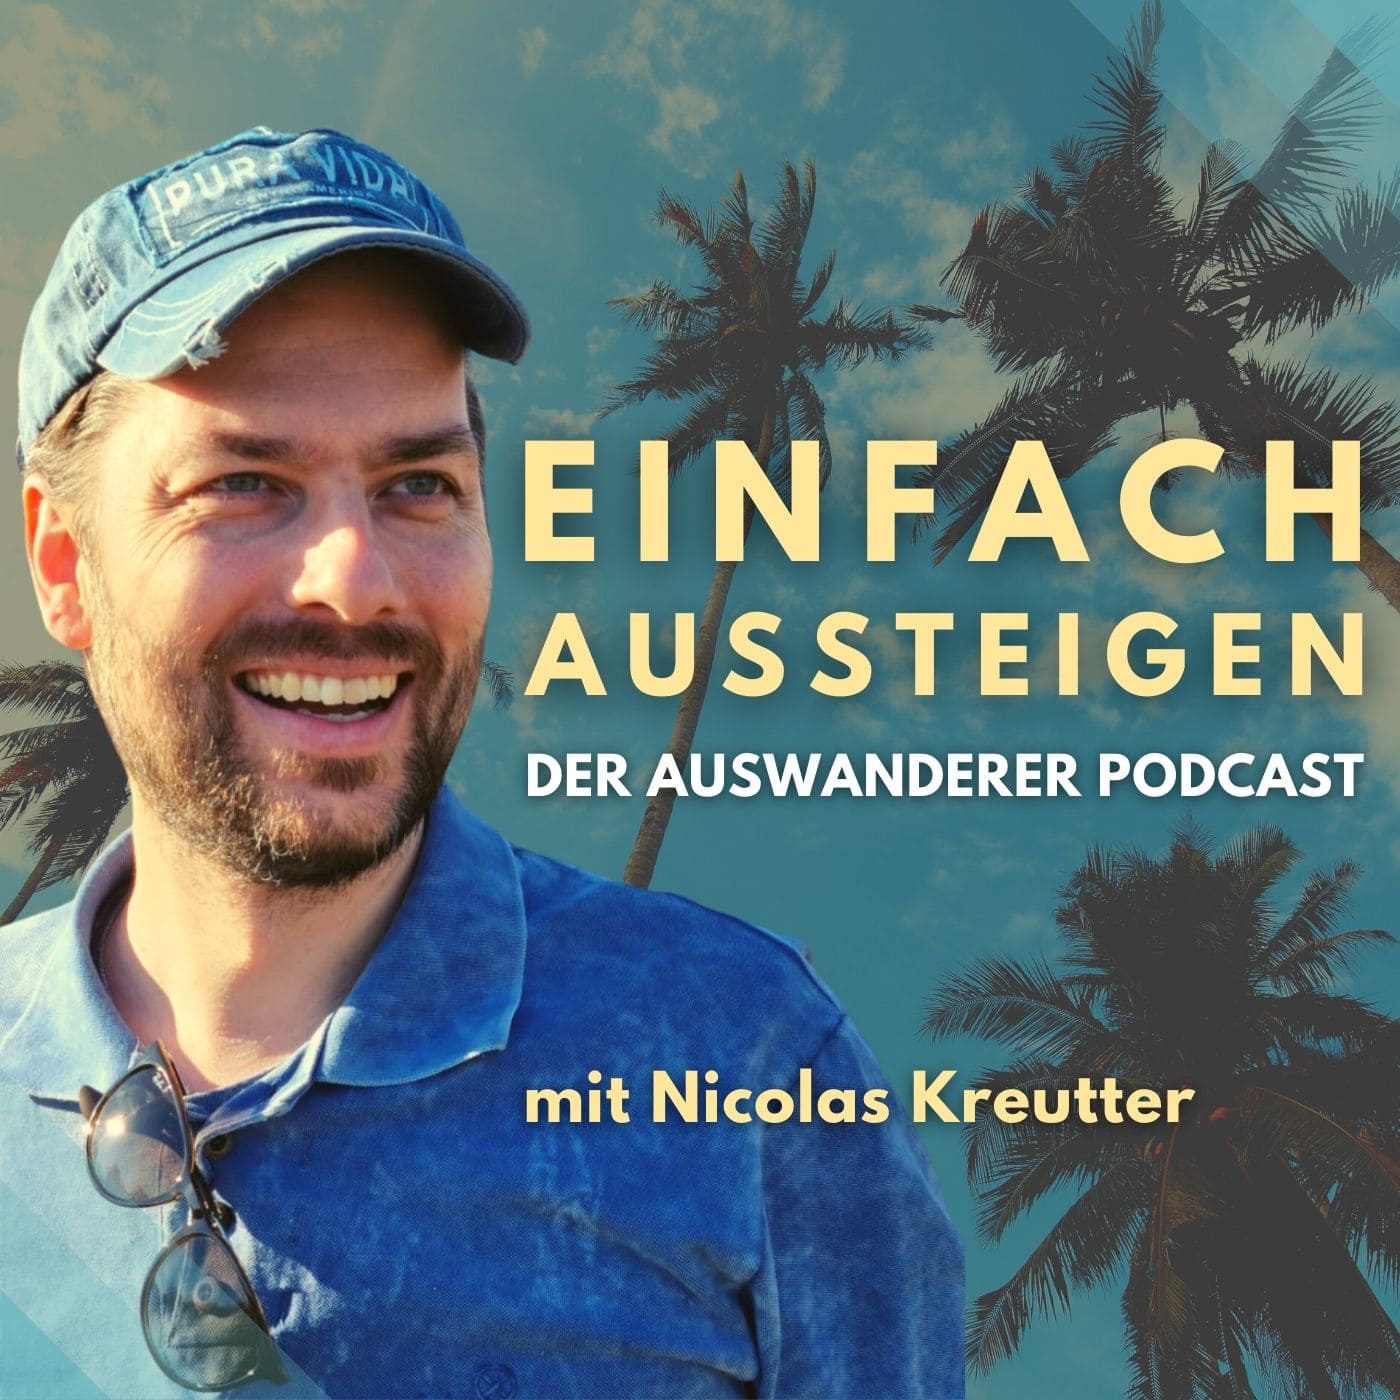 EINFACH AUSSTEIGEN Der Auswanderer Podcast mit Nicolas Kreutter